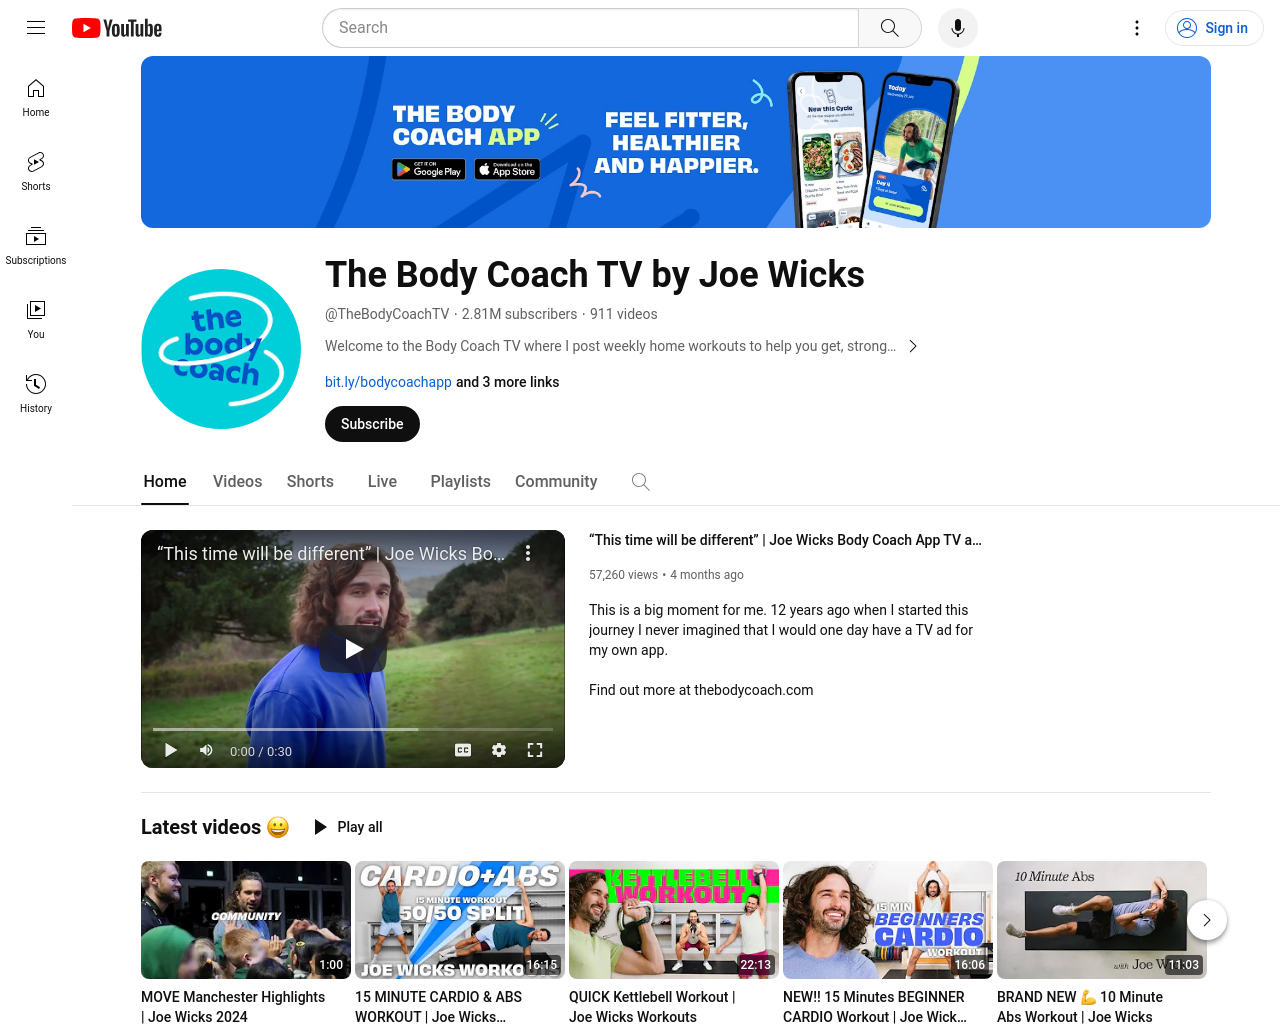 The Body Coach TV- Joe Wicks